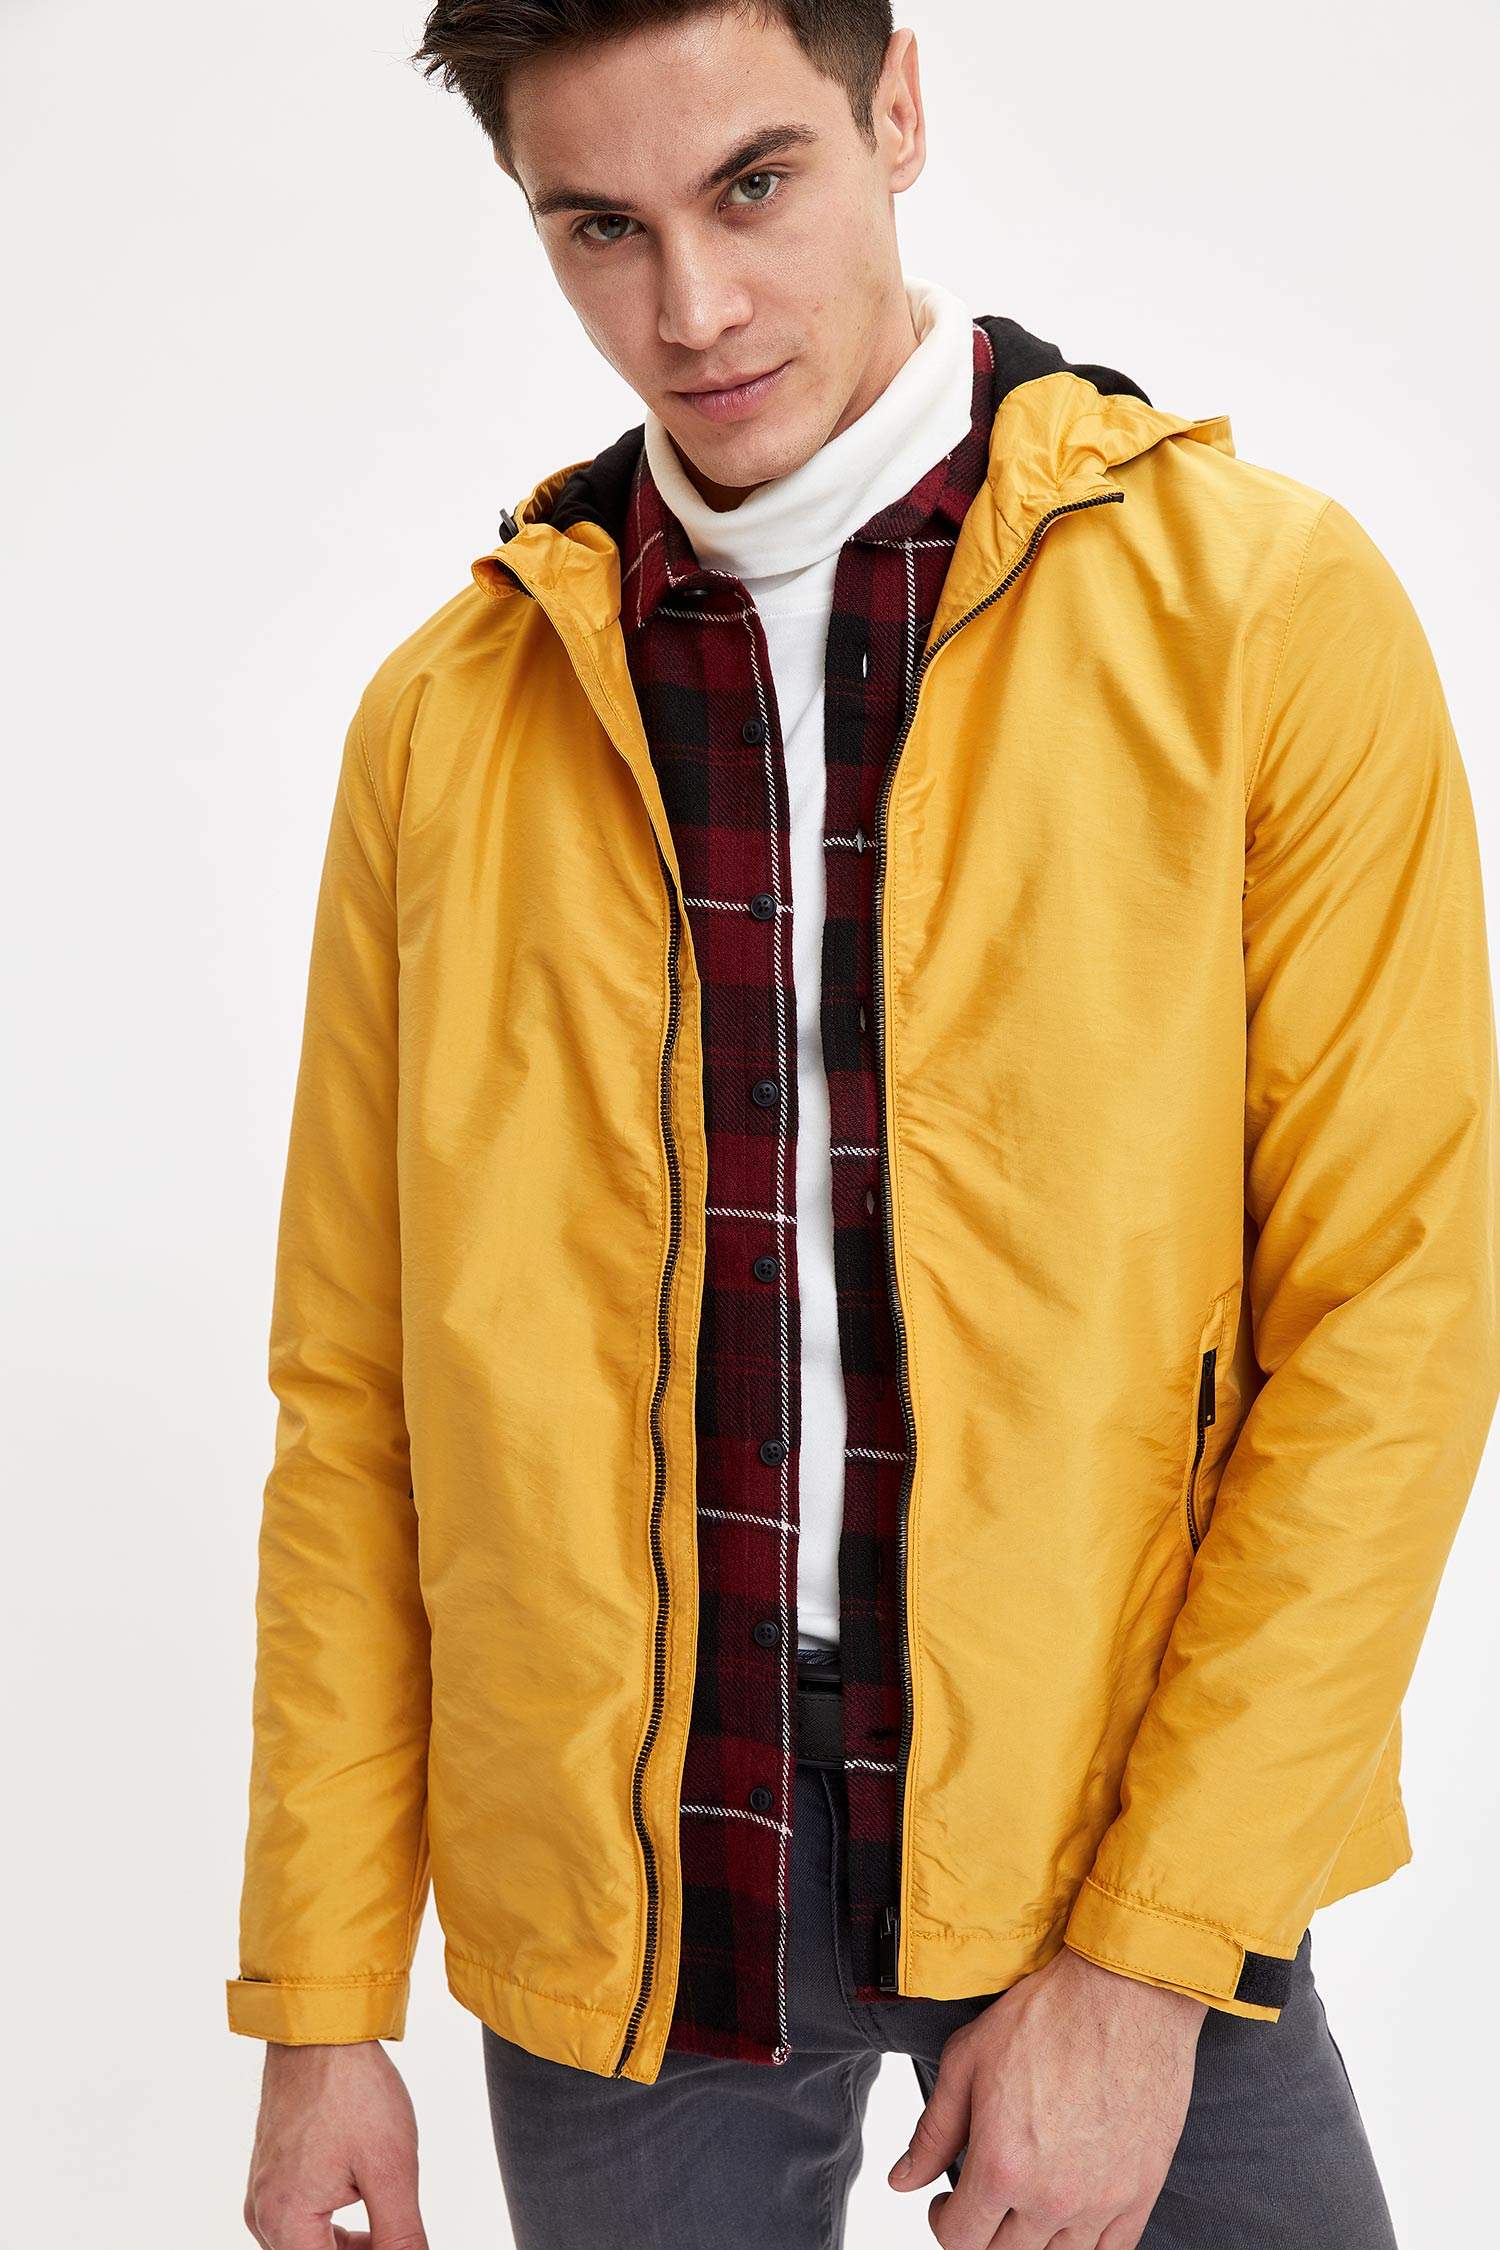 manteau jaune homme